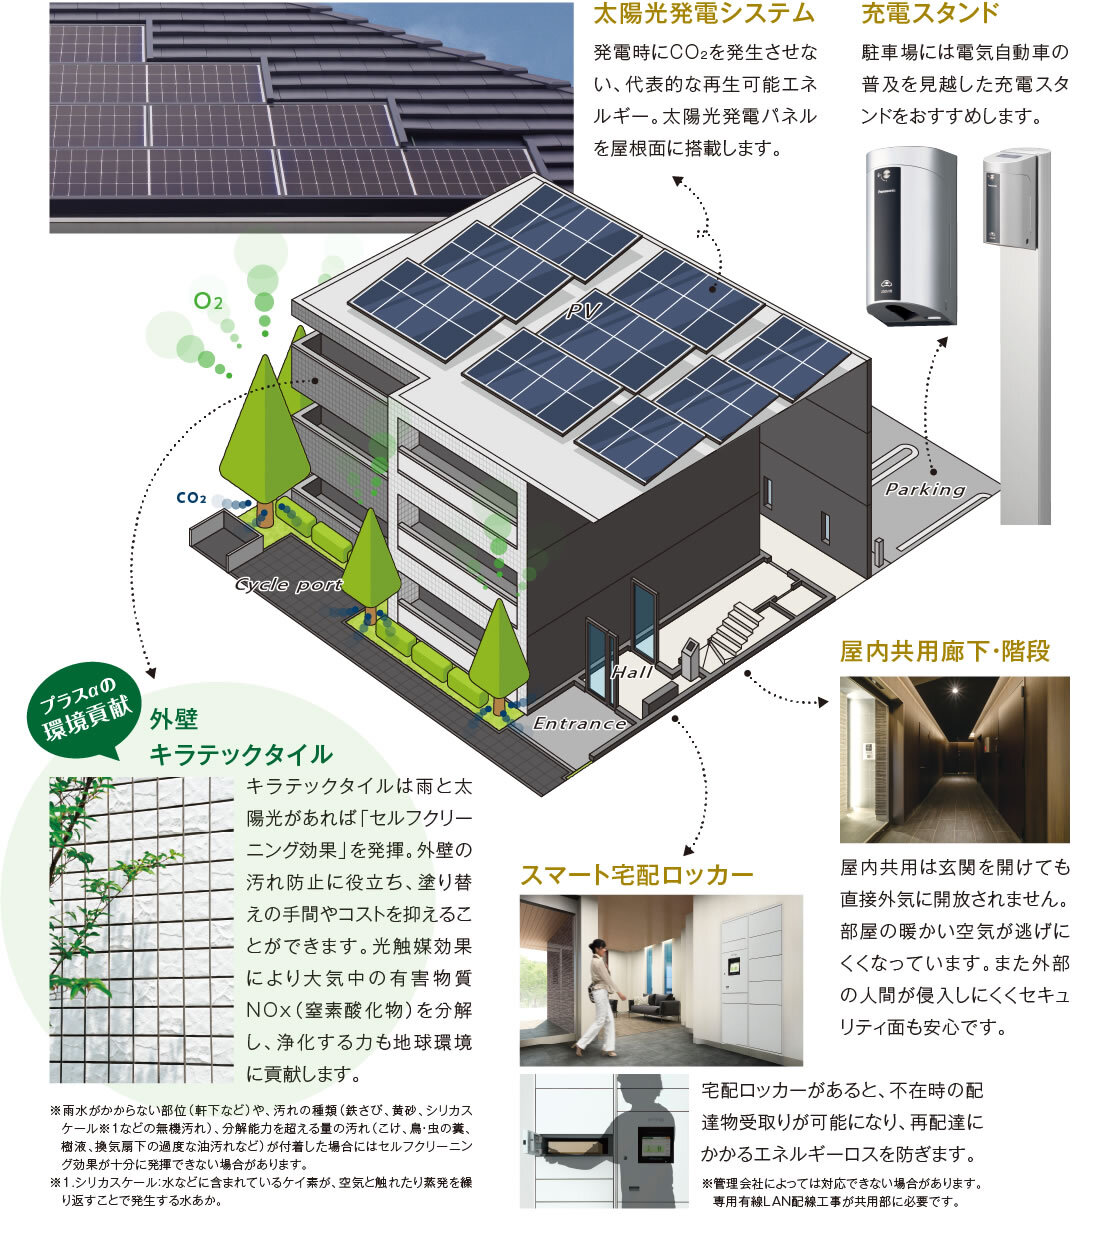 太陽光発電システム：発電時にCO₂を発生させない、代表的な再生可能エネルギー。太陽光発電パネルを屋根面に搭載します。　外壁キラテックタイル：キラテックタイルは雨と太陽光があれば「セルフクリーニング効果」を発揮。外壁の汚れ防止に役立ち、塗り替えの手間やコストを抑えることができます。光触媒効果により大気中の有害物質NOx（窒素酸化物）を分解し、浄化する力も地球環境に貢献します。　スマート宅配ロッカー：宅配ロッカーがあると、不在時の配達物受取りが可能になり、再配達にかかるエネルギーロスを防ぎます。　屋内共用廊下・階段：屋内共用は玄関を開けても直接外気に開放されません。部屋の暖かい空気が逃げにくくなっています。また外部の人間が侵入しにくくセキュリティ面も安心です。　充電スタンド：駐車場には電気自動車の普及を見越した充電スタンドをおすすめします。